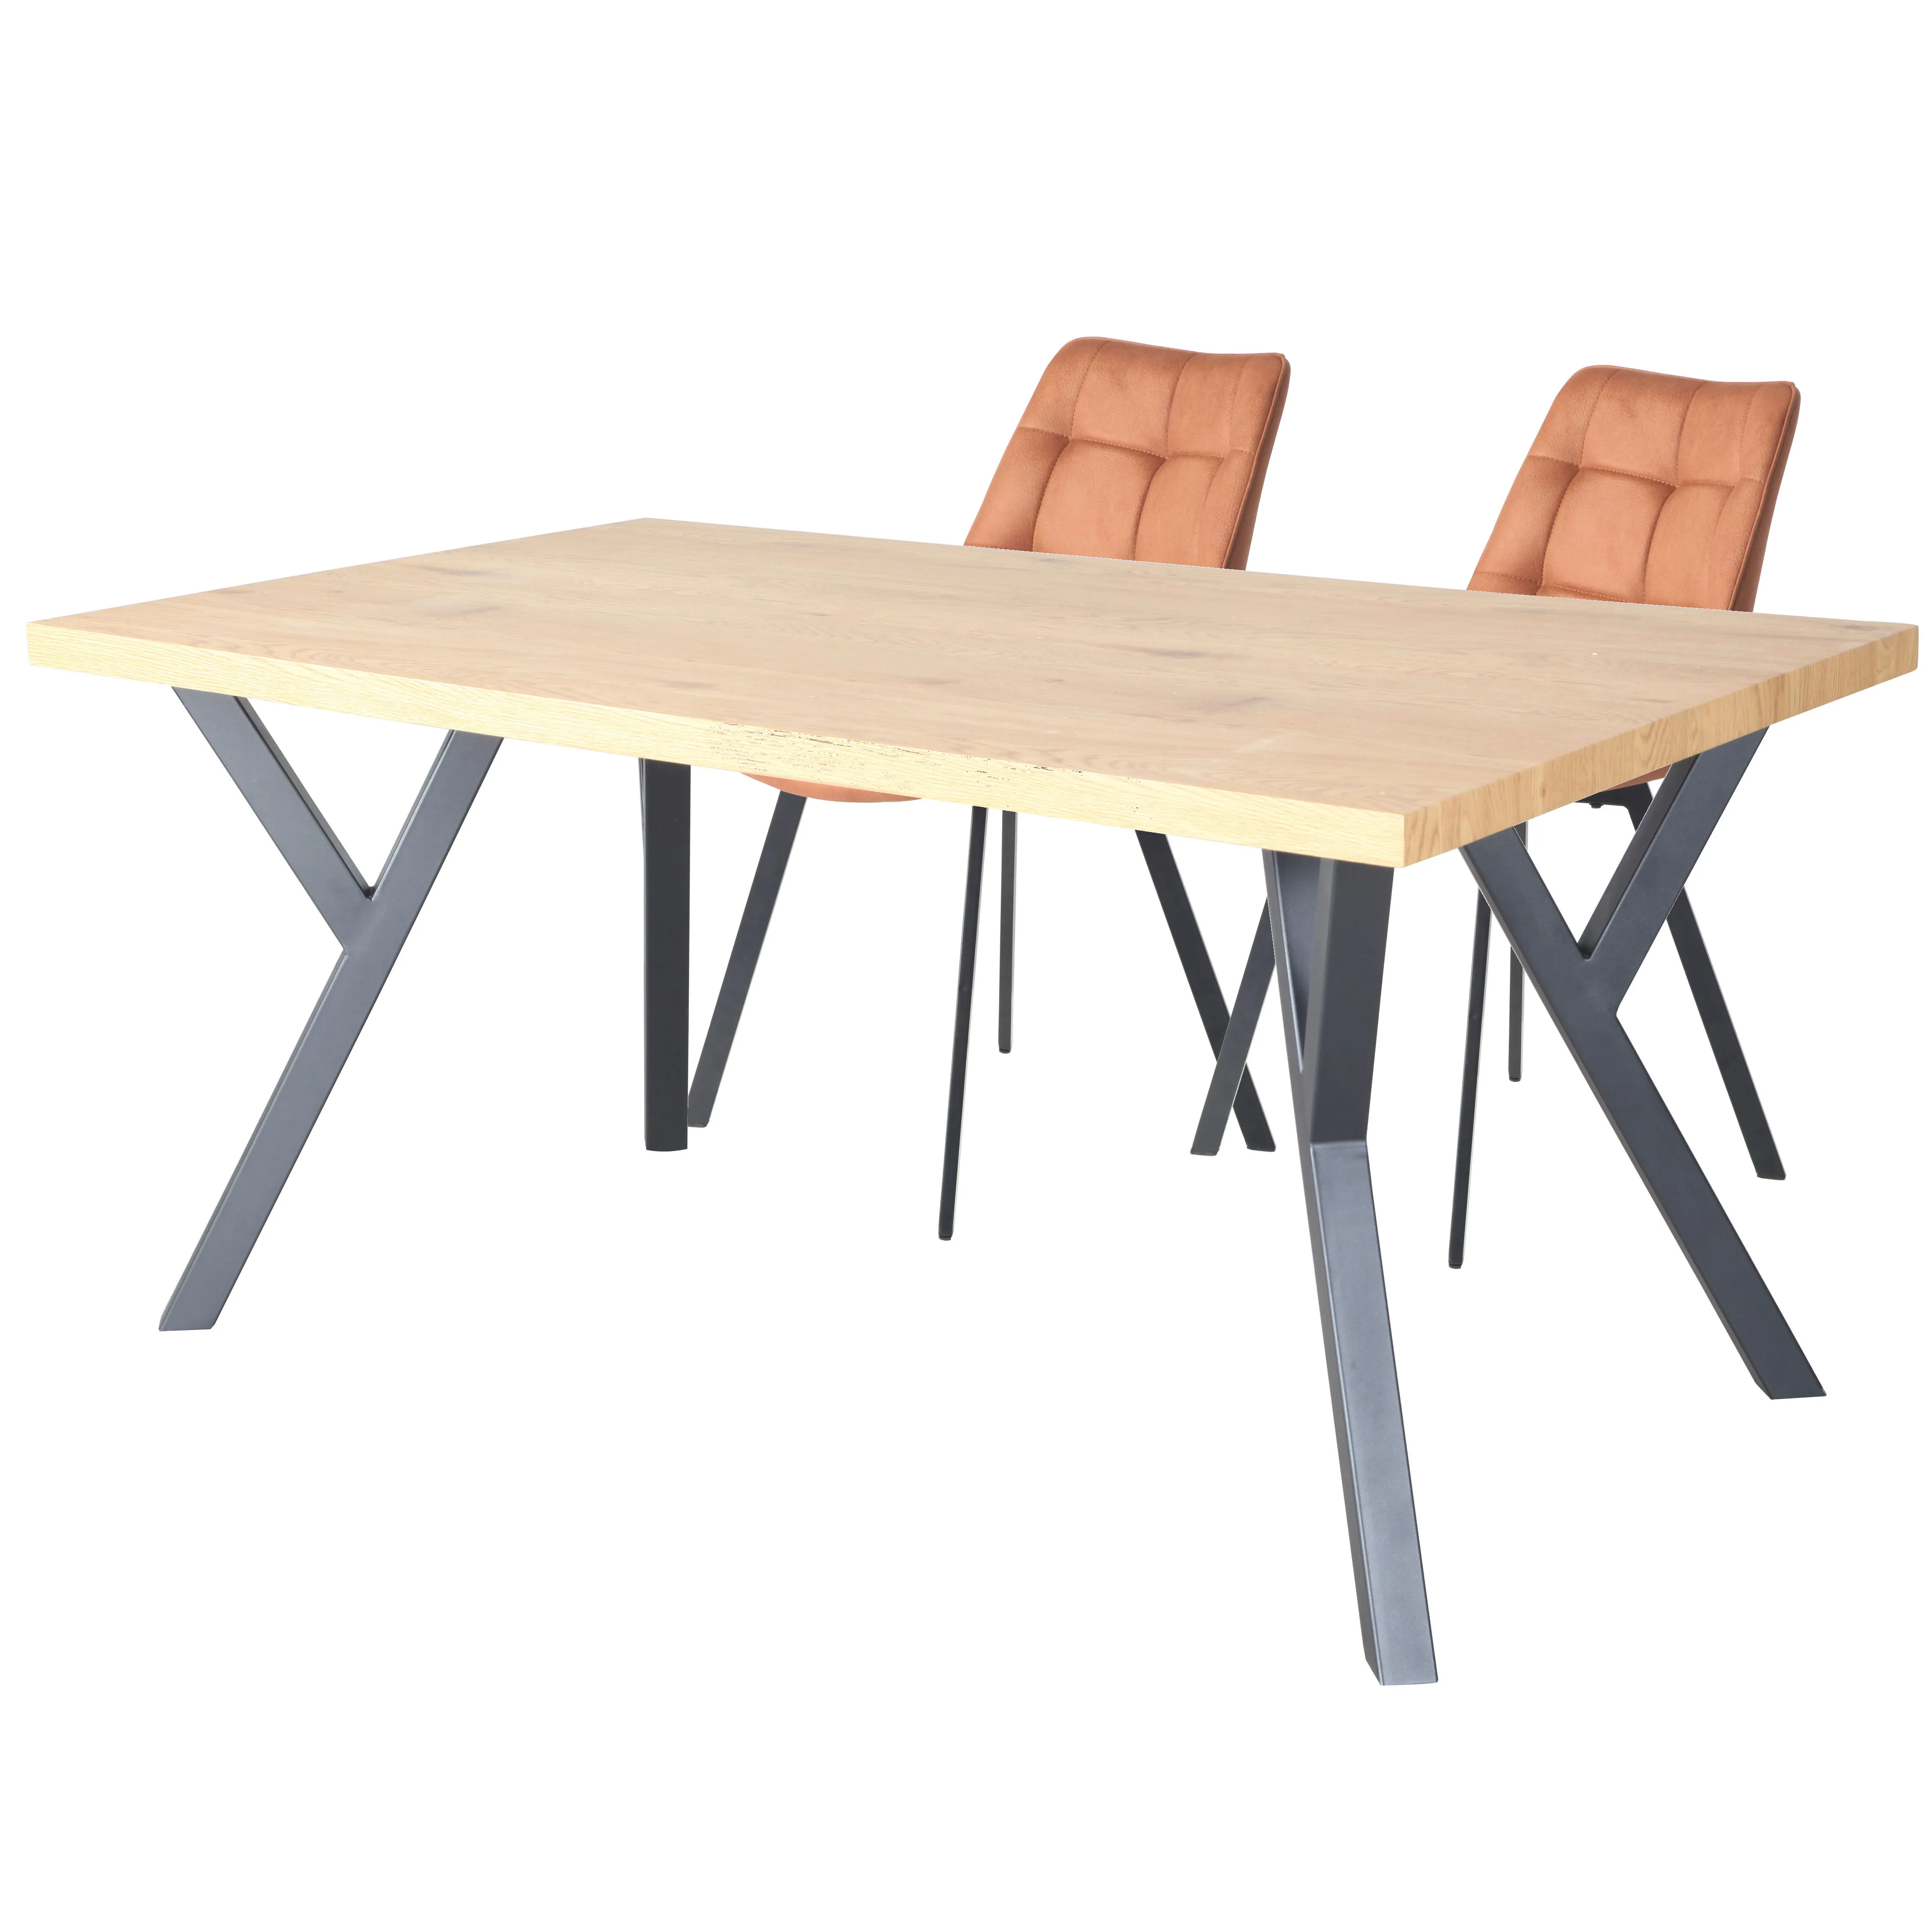 2020 de alta calidad Simple y moderno acabado de madera Marco de metal en polvo abrigo mesa de comedor MDF